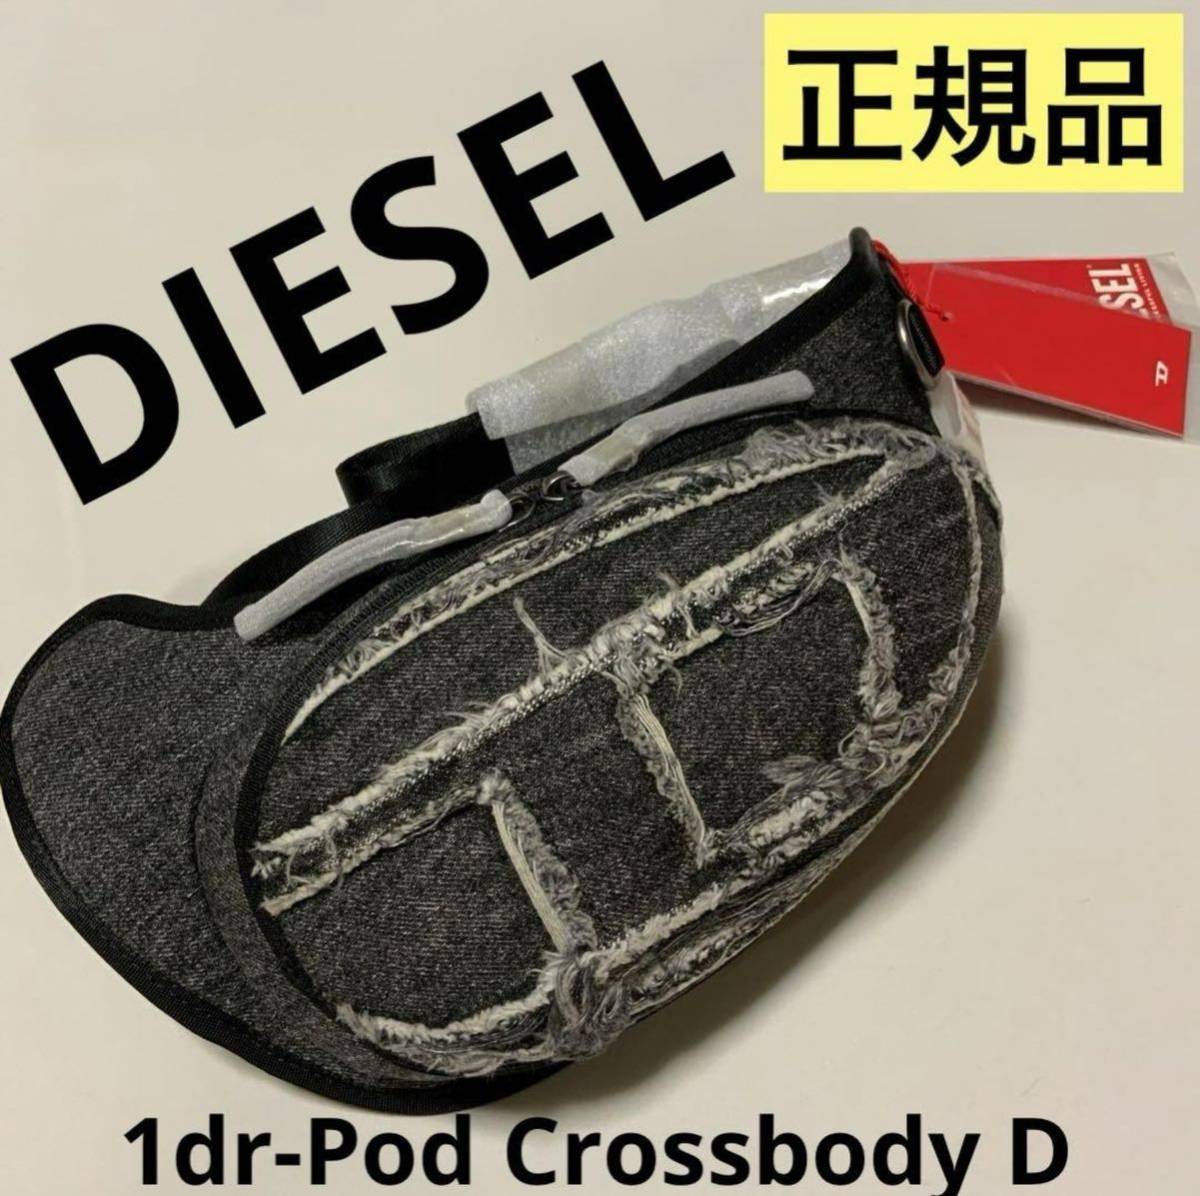 大感謝価格 洗練されたデザイン DIESEL 1dr-Pod Crossbody D X09647